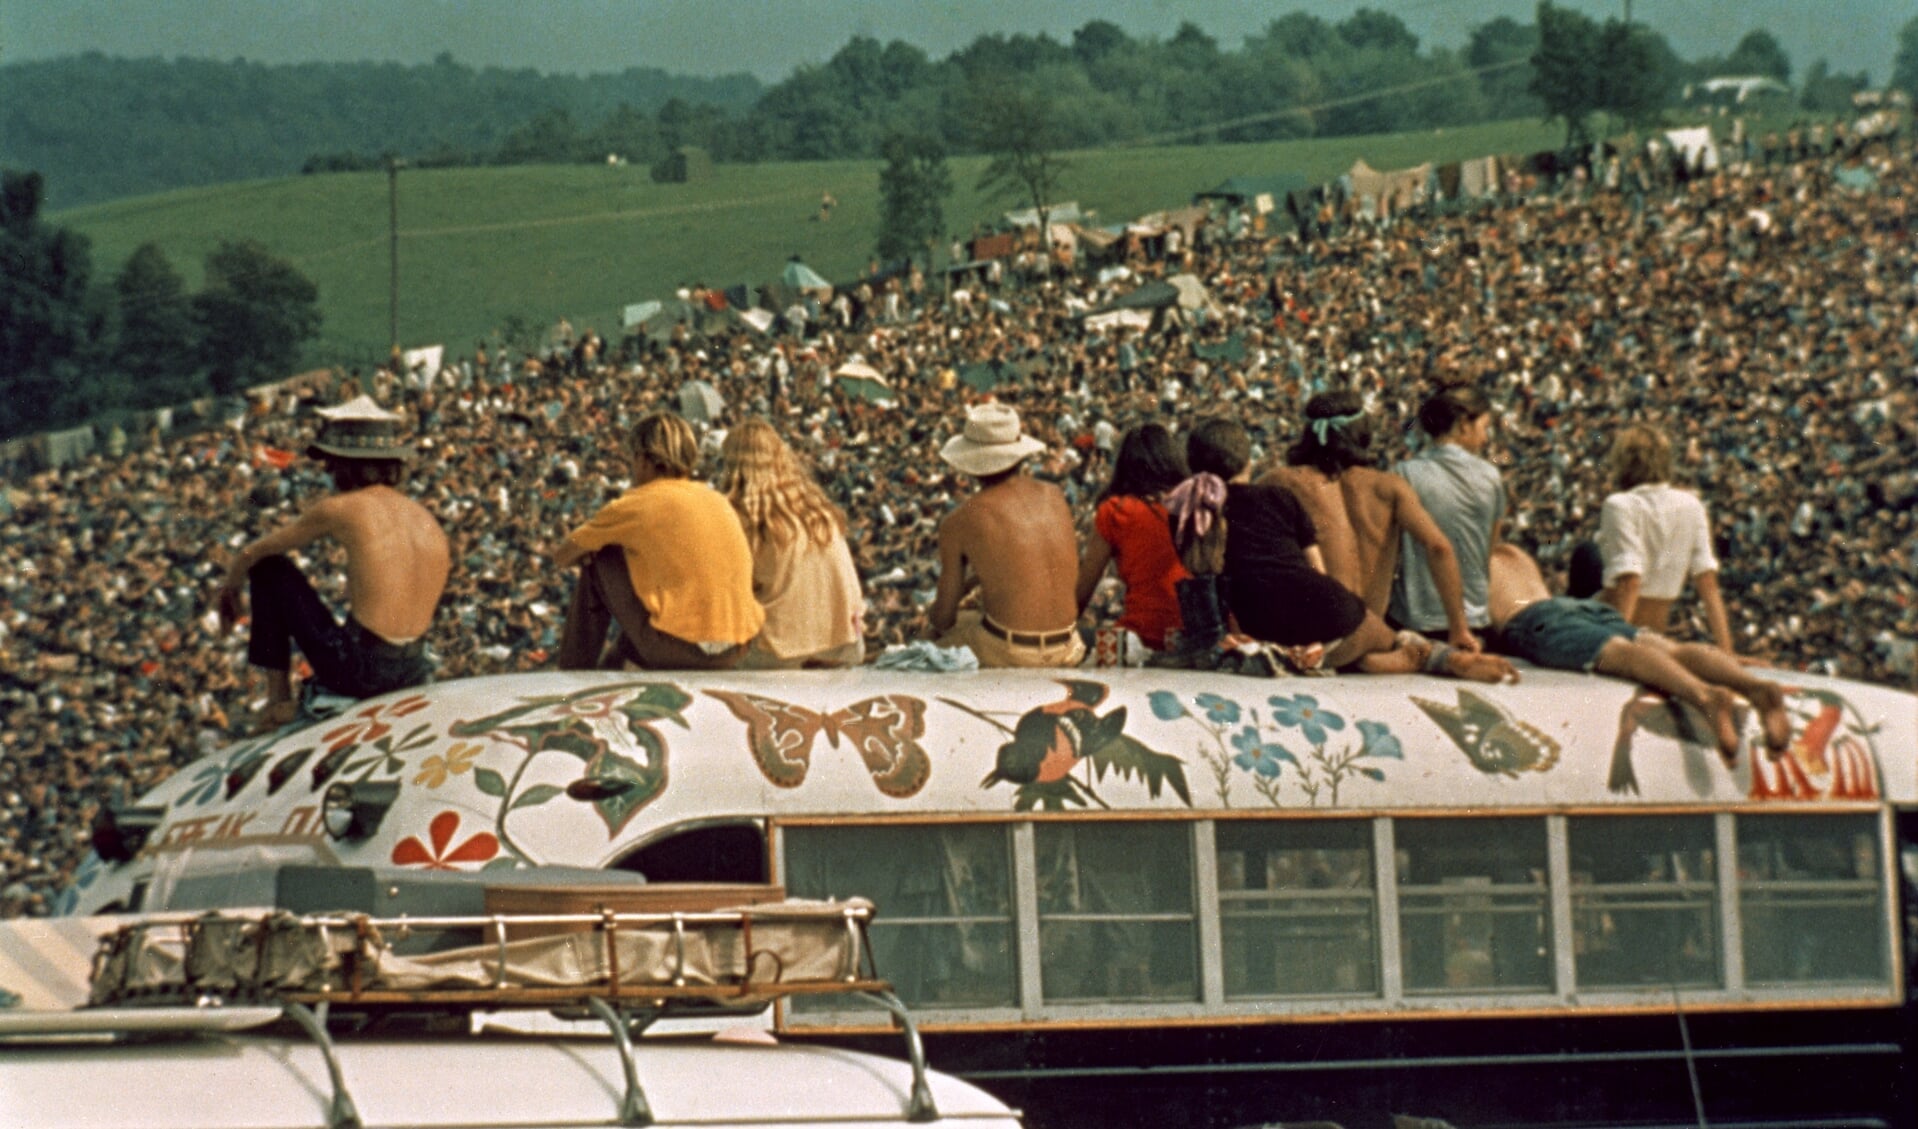 Precies vijftig jaar geleden dat Woodstock werd gehouden.